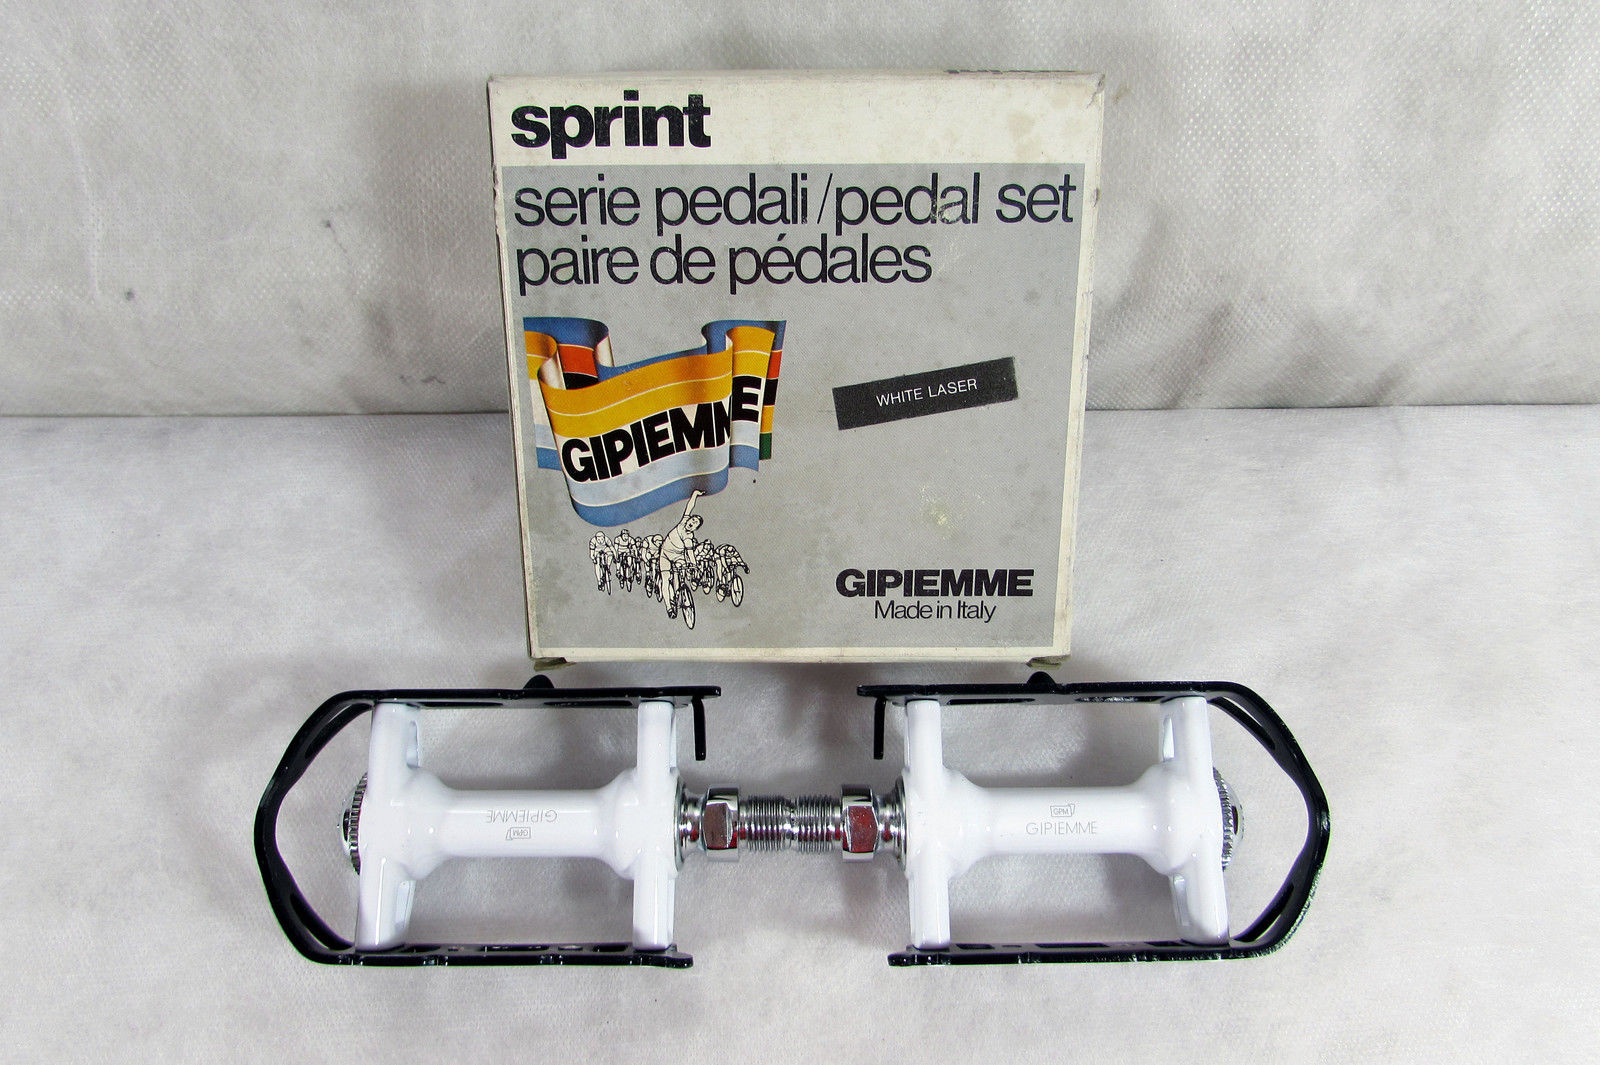 white laser pedals pedali.JPG